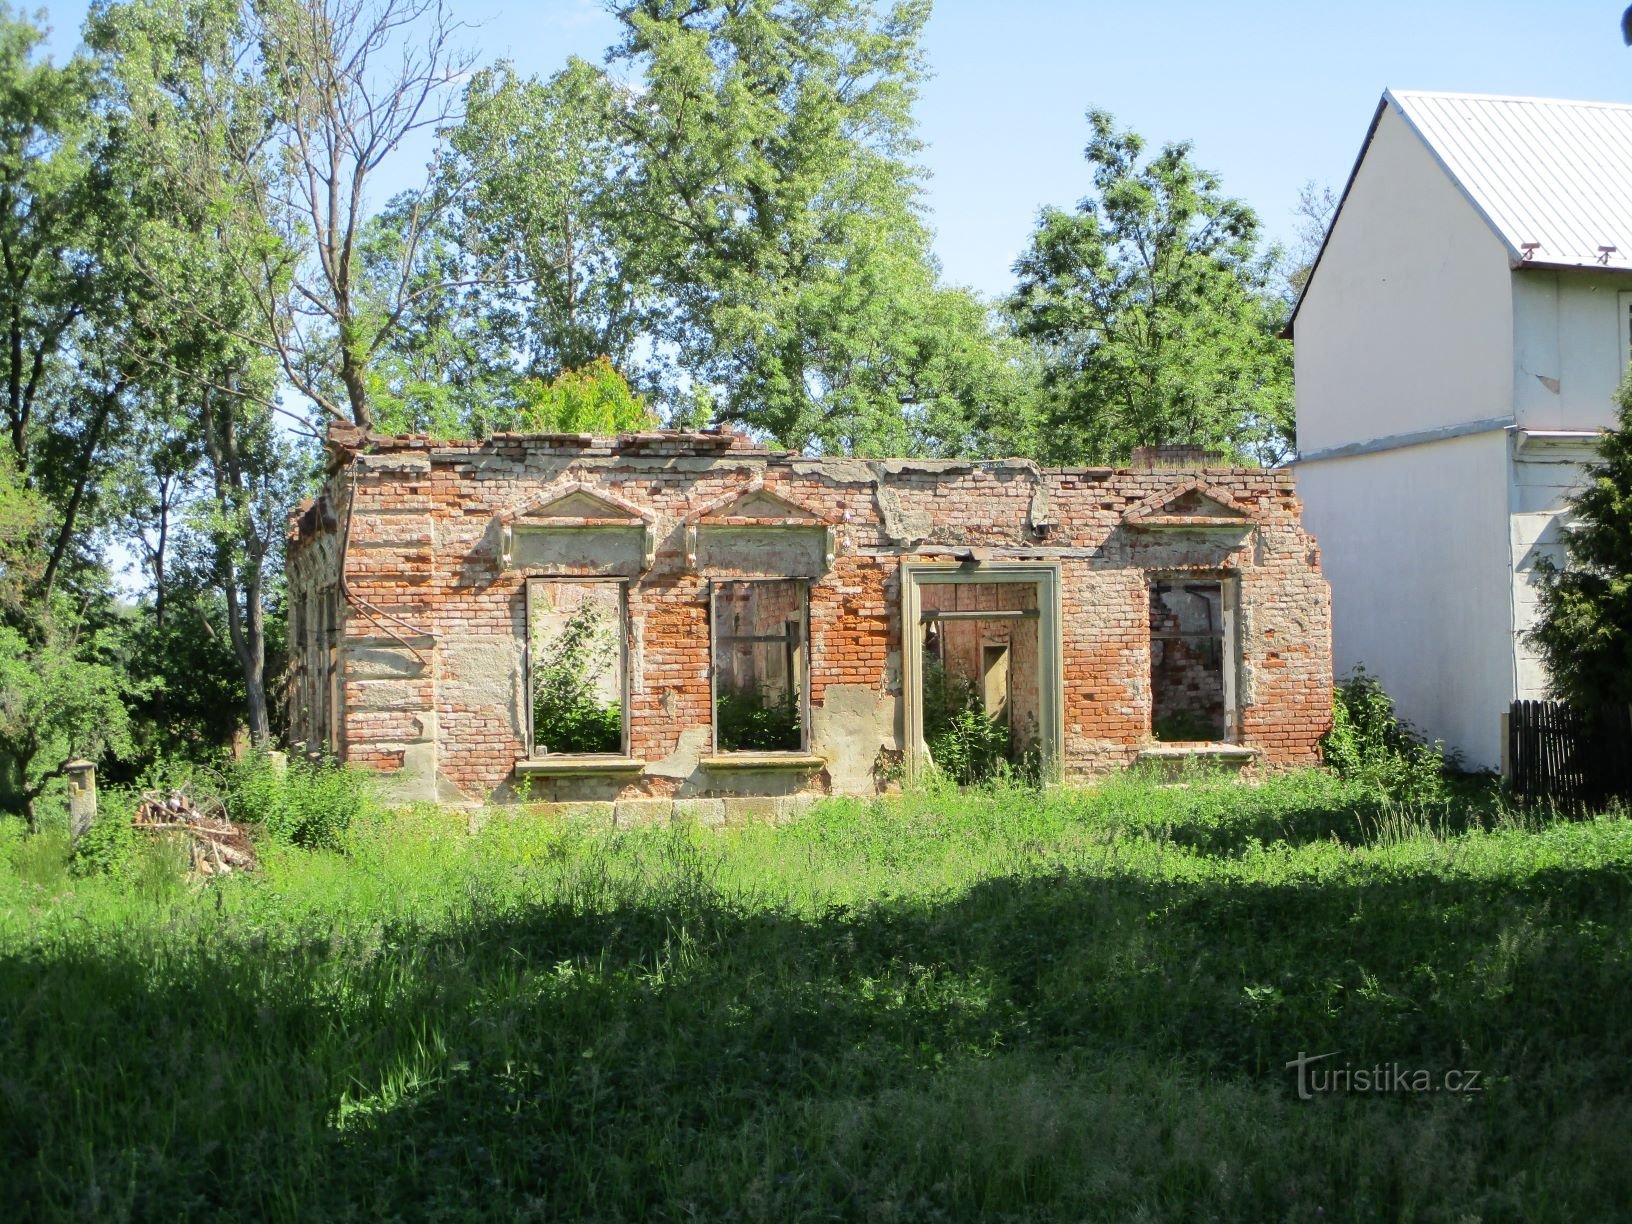 Ruinerne af det originale nr. 31 (Starý Ples, 1.6.2020. juni XNUMX)